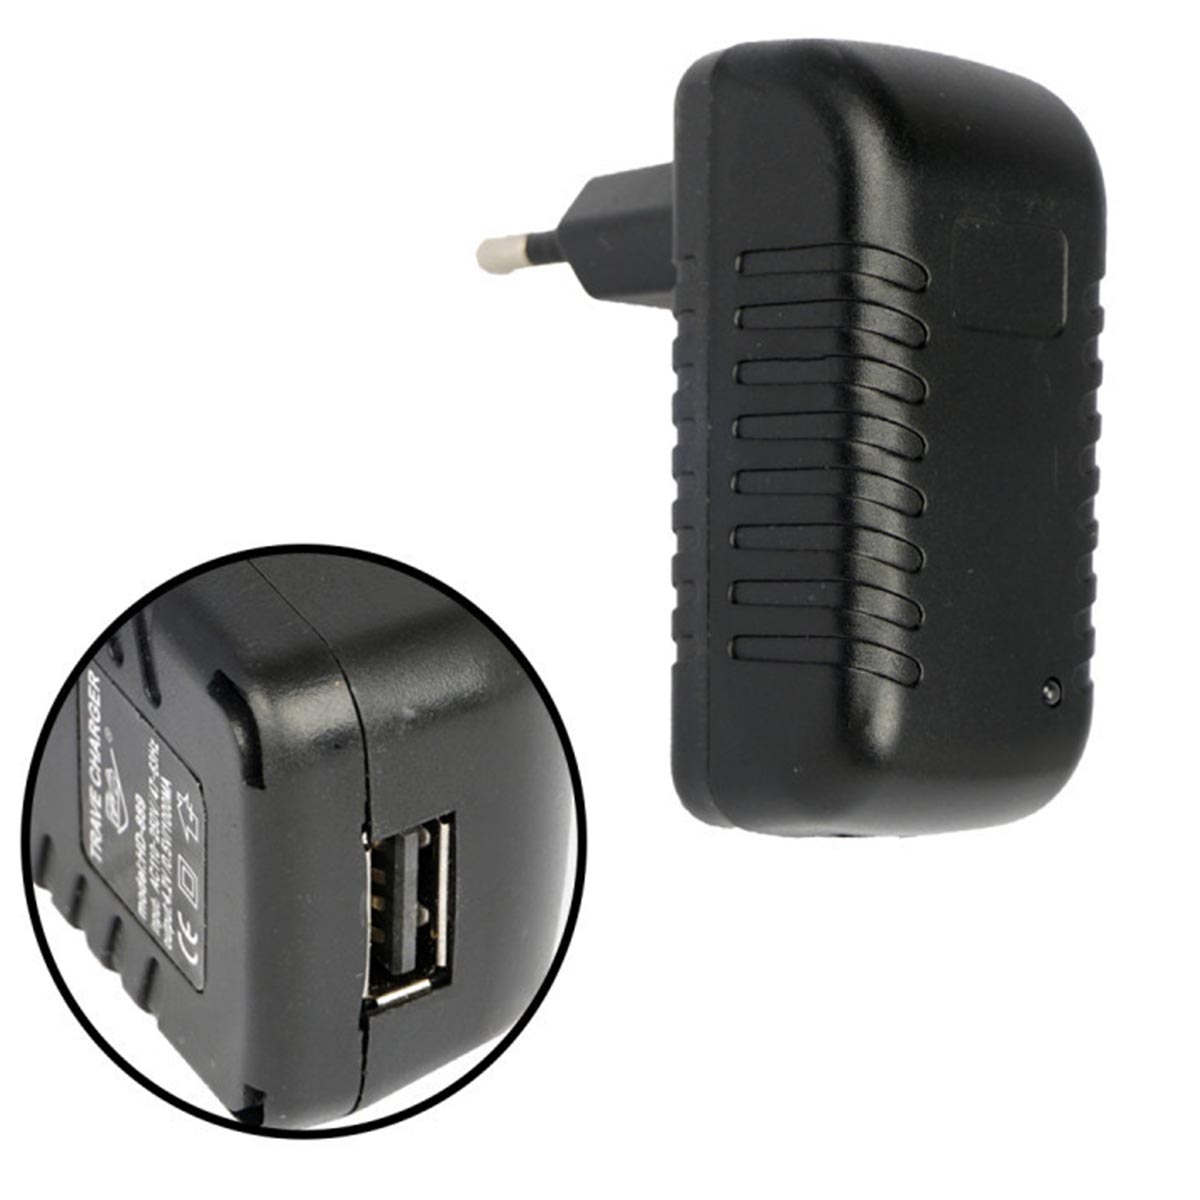 СЗУ (сетевое зарядное устройство) LP100, 1 USB порт, 4.2V, 1A, цвет черный